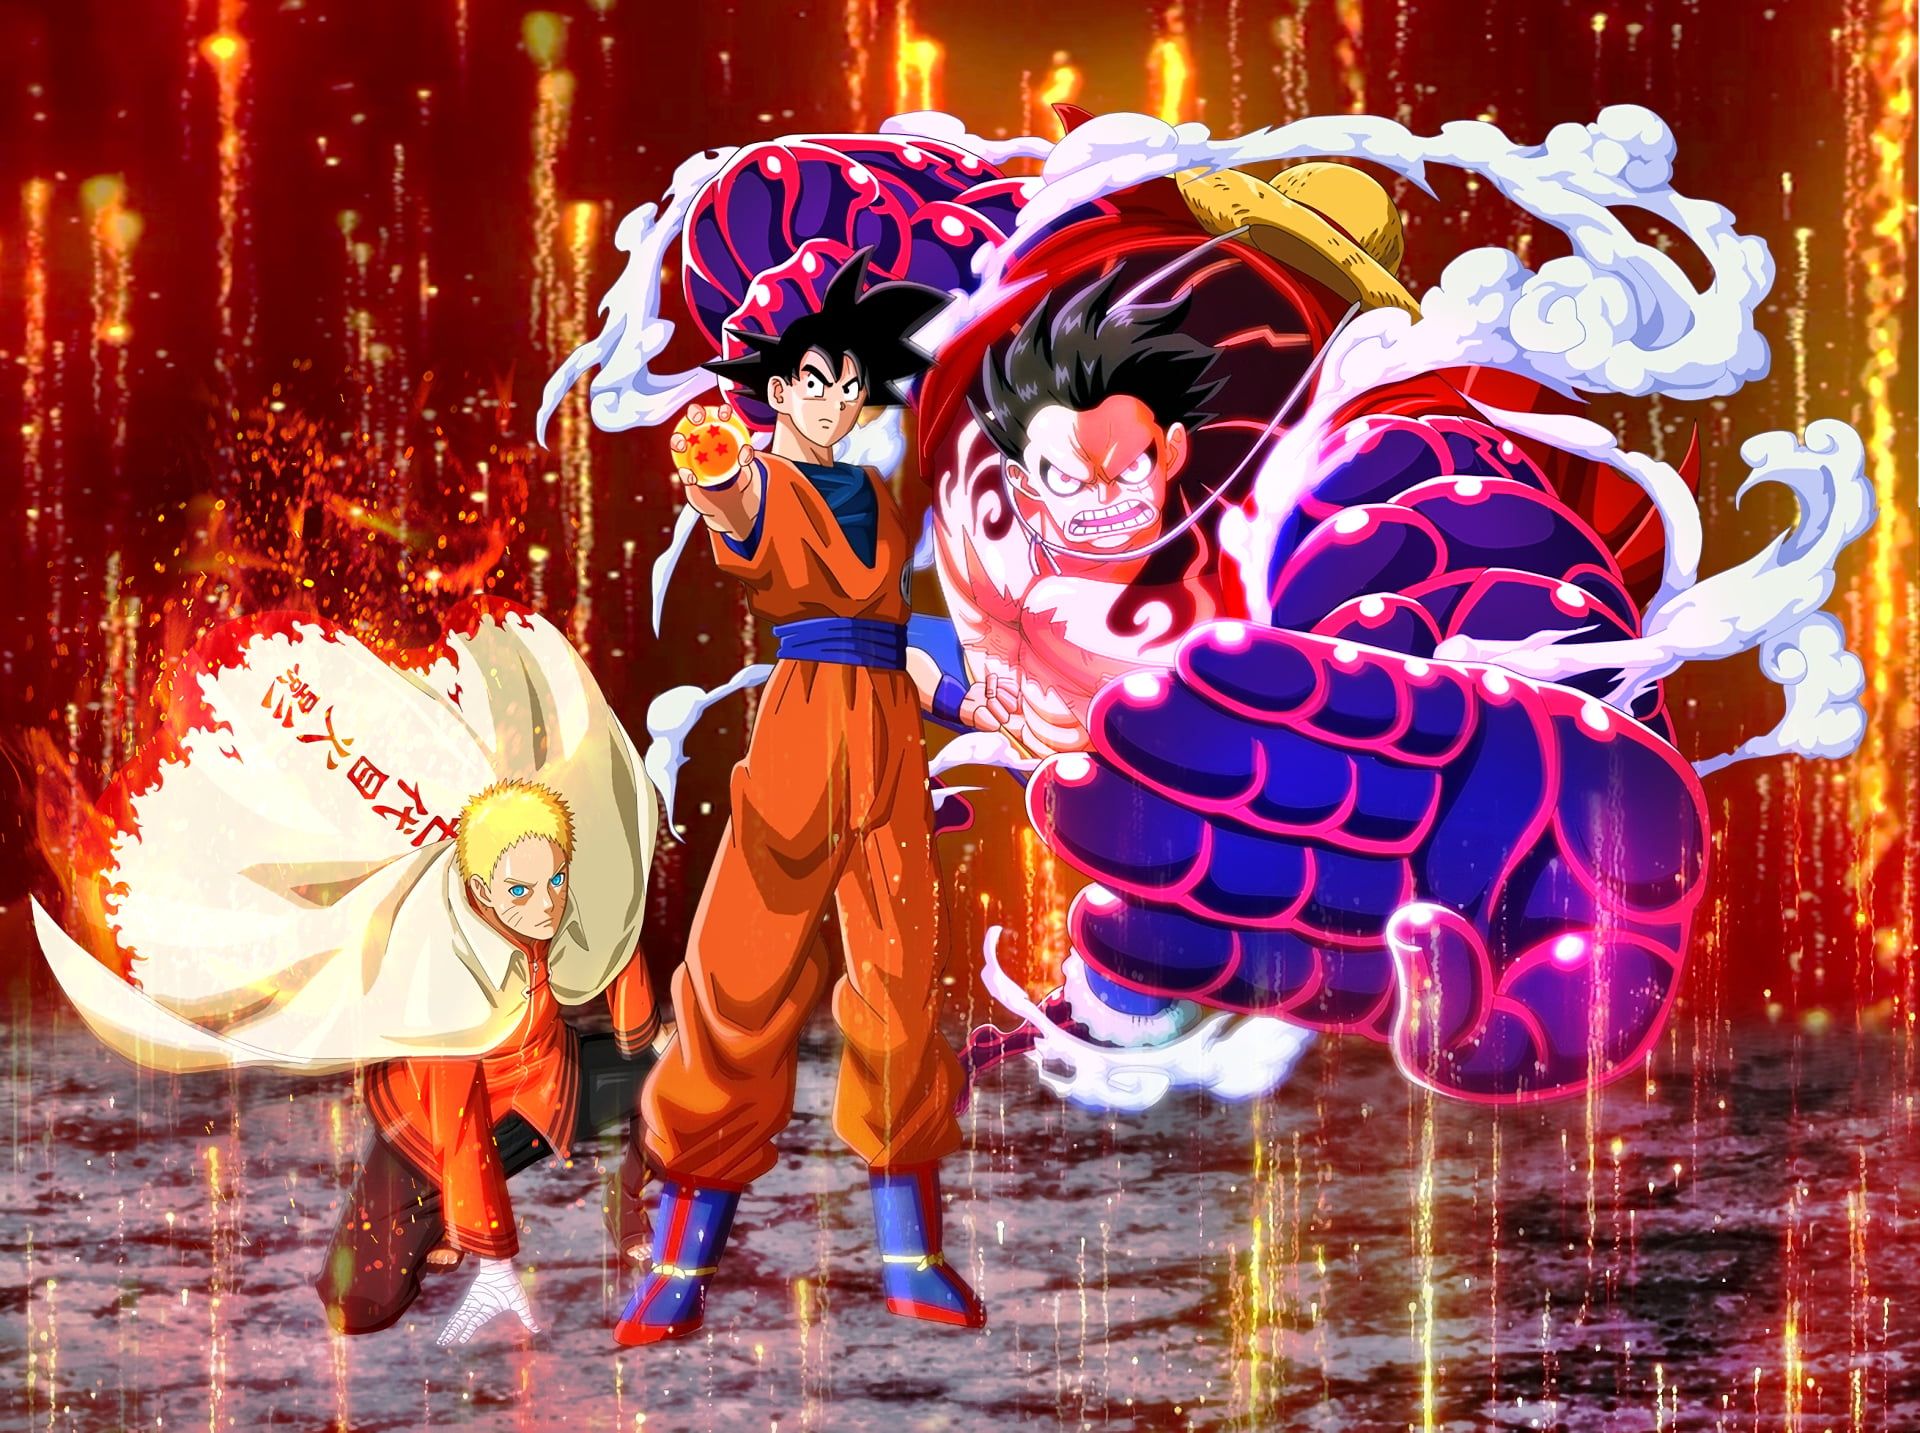 Khám phá bộ sưu tập những hình nền độc đáo về hai nhân vật Luffy và Goku đã được thiết kế bởi các họa sĩ tài ba. Cùng chiêm ngưỡng những tấm hình ấn tượng về những siêu anh hùng huyền thoại của truyện tranh nổi tiếng này, chắc chắn bạn sẽ không thể rời mắt khỏi bức ảnh này.